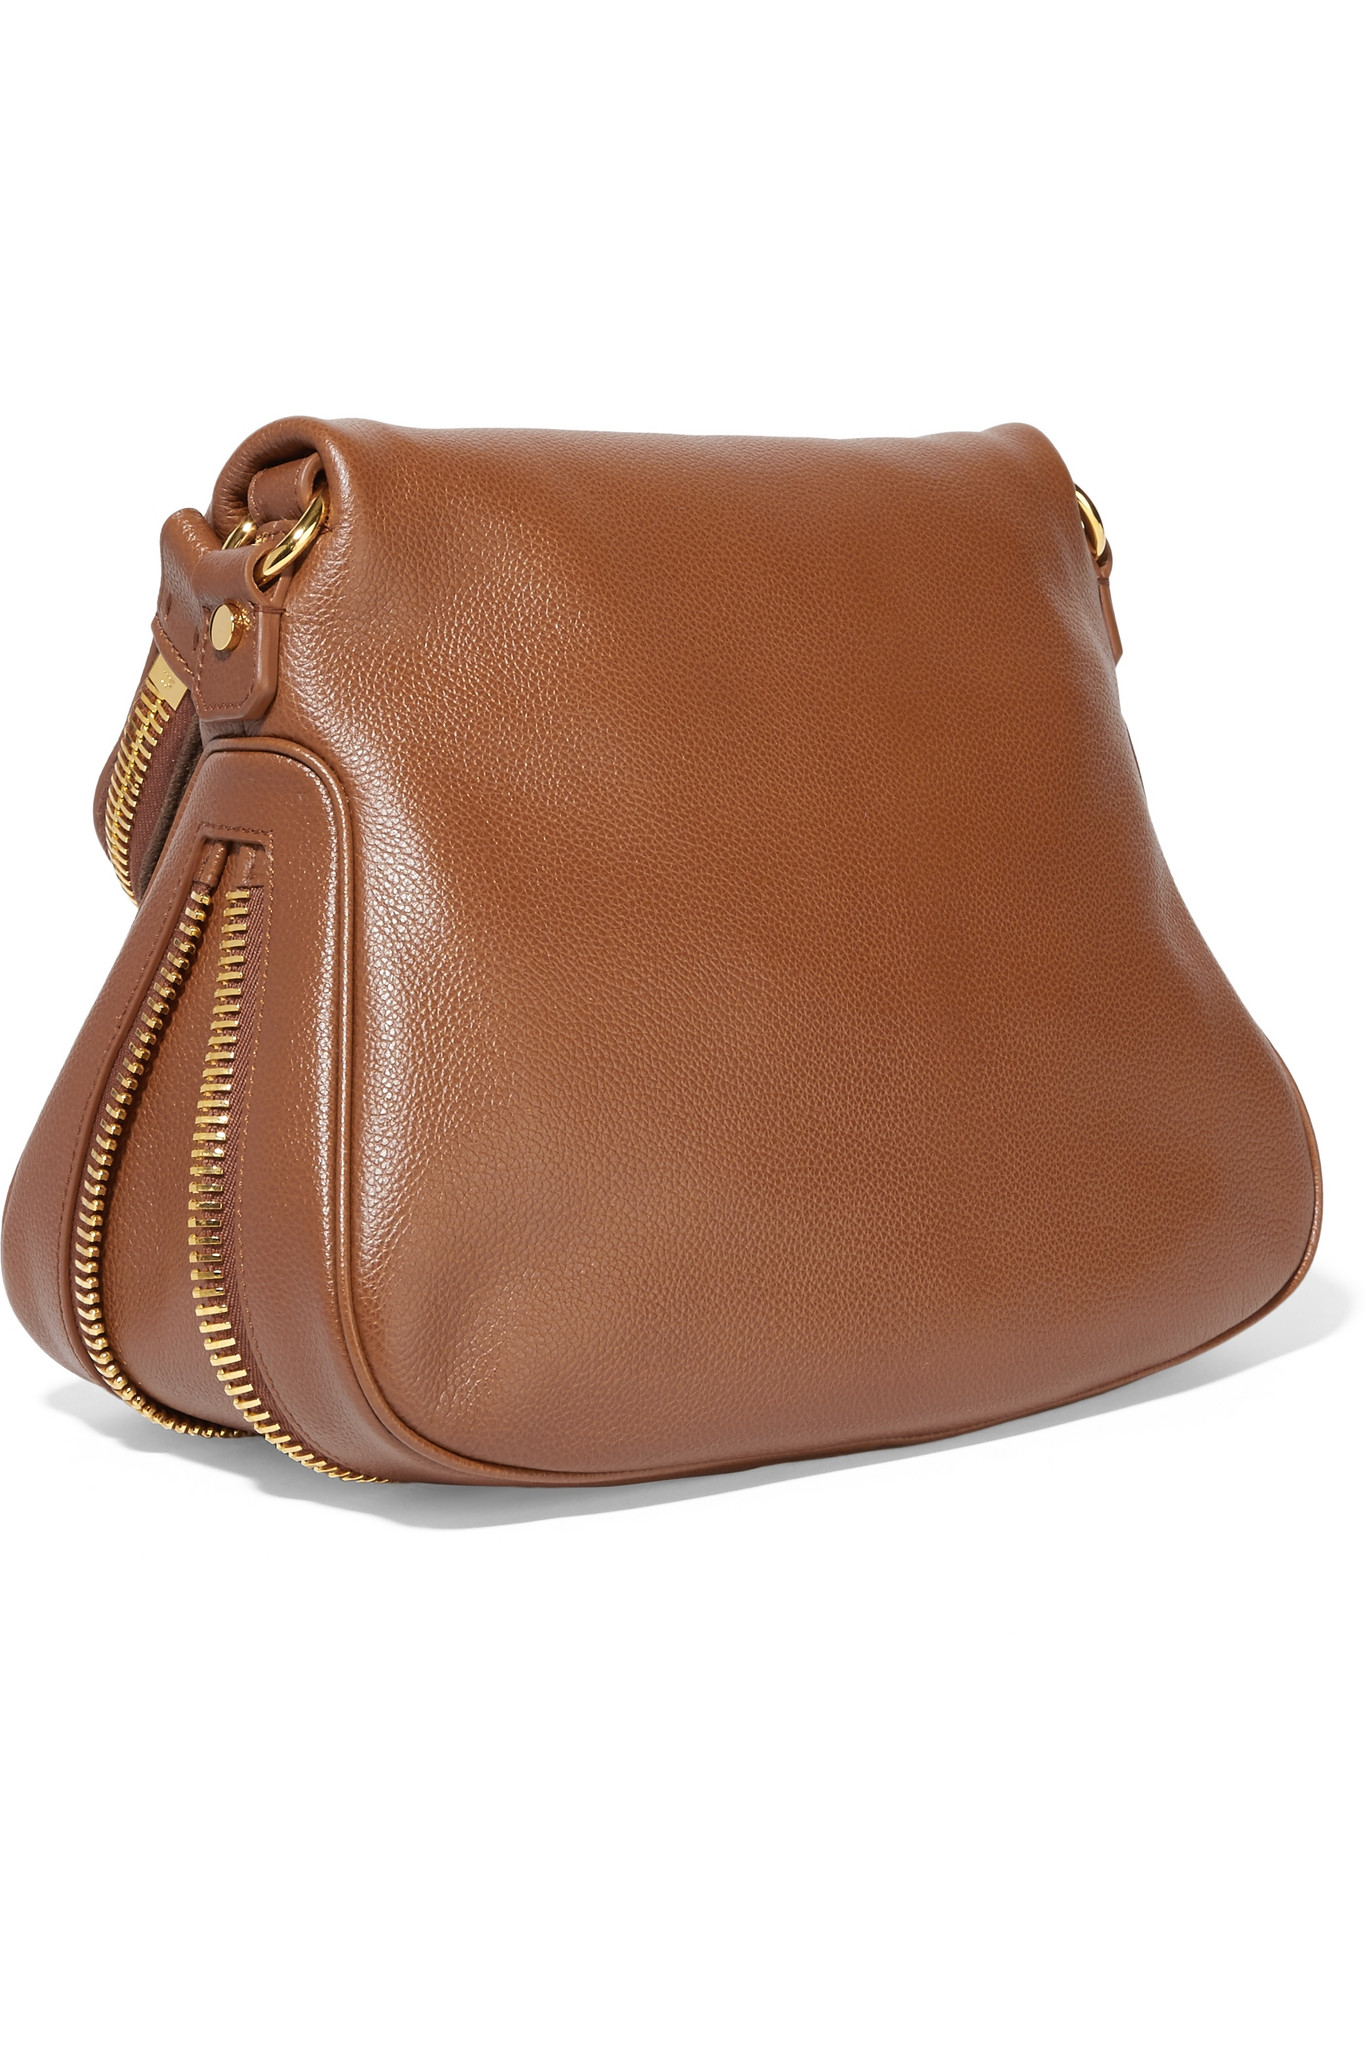 Tom Ford Jennifer Medium Grained Leather Shoulder Bag